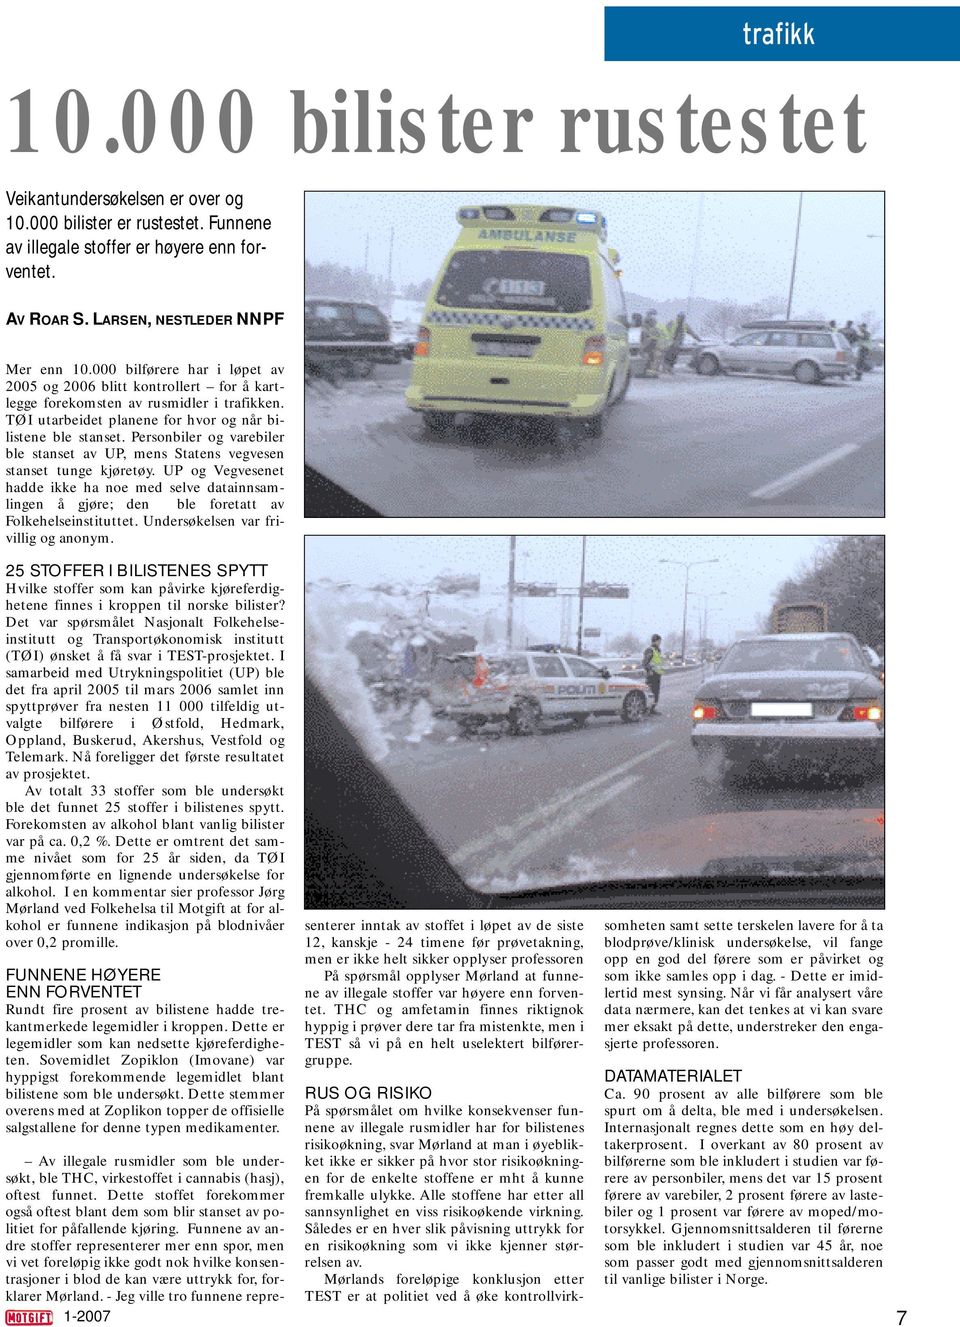 Personbiler og varebiler ble stanset av UP, mens Statens vegvesen stanset tunge kjøretøy.